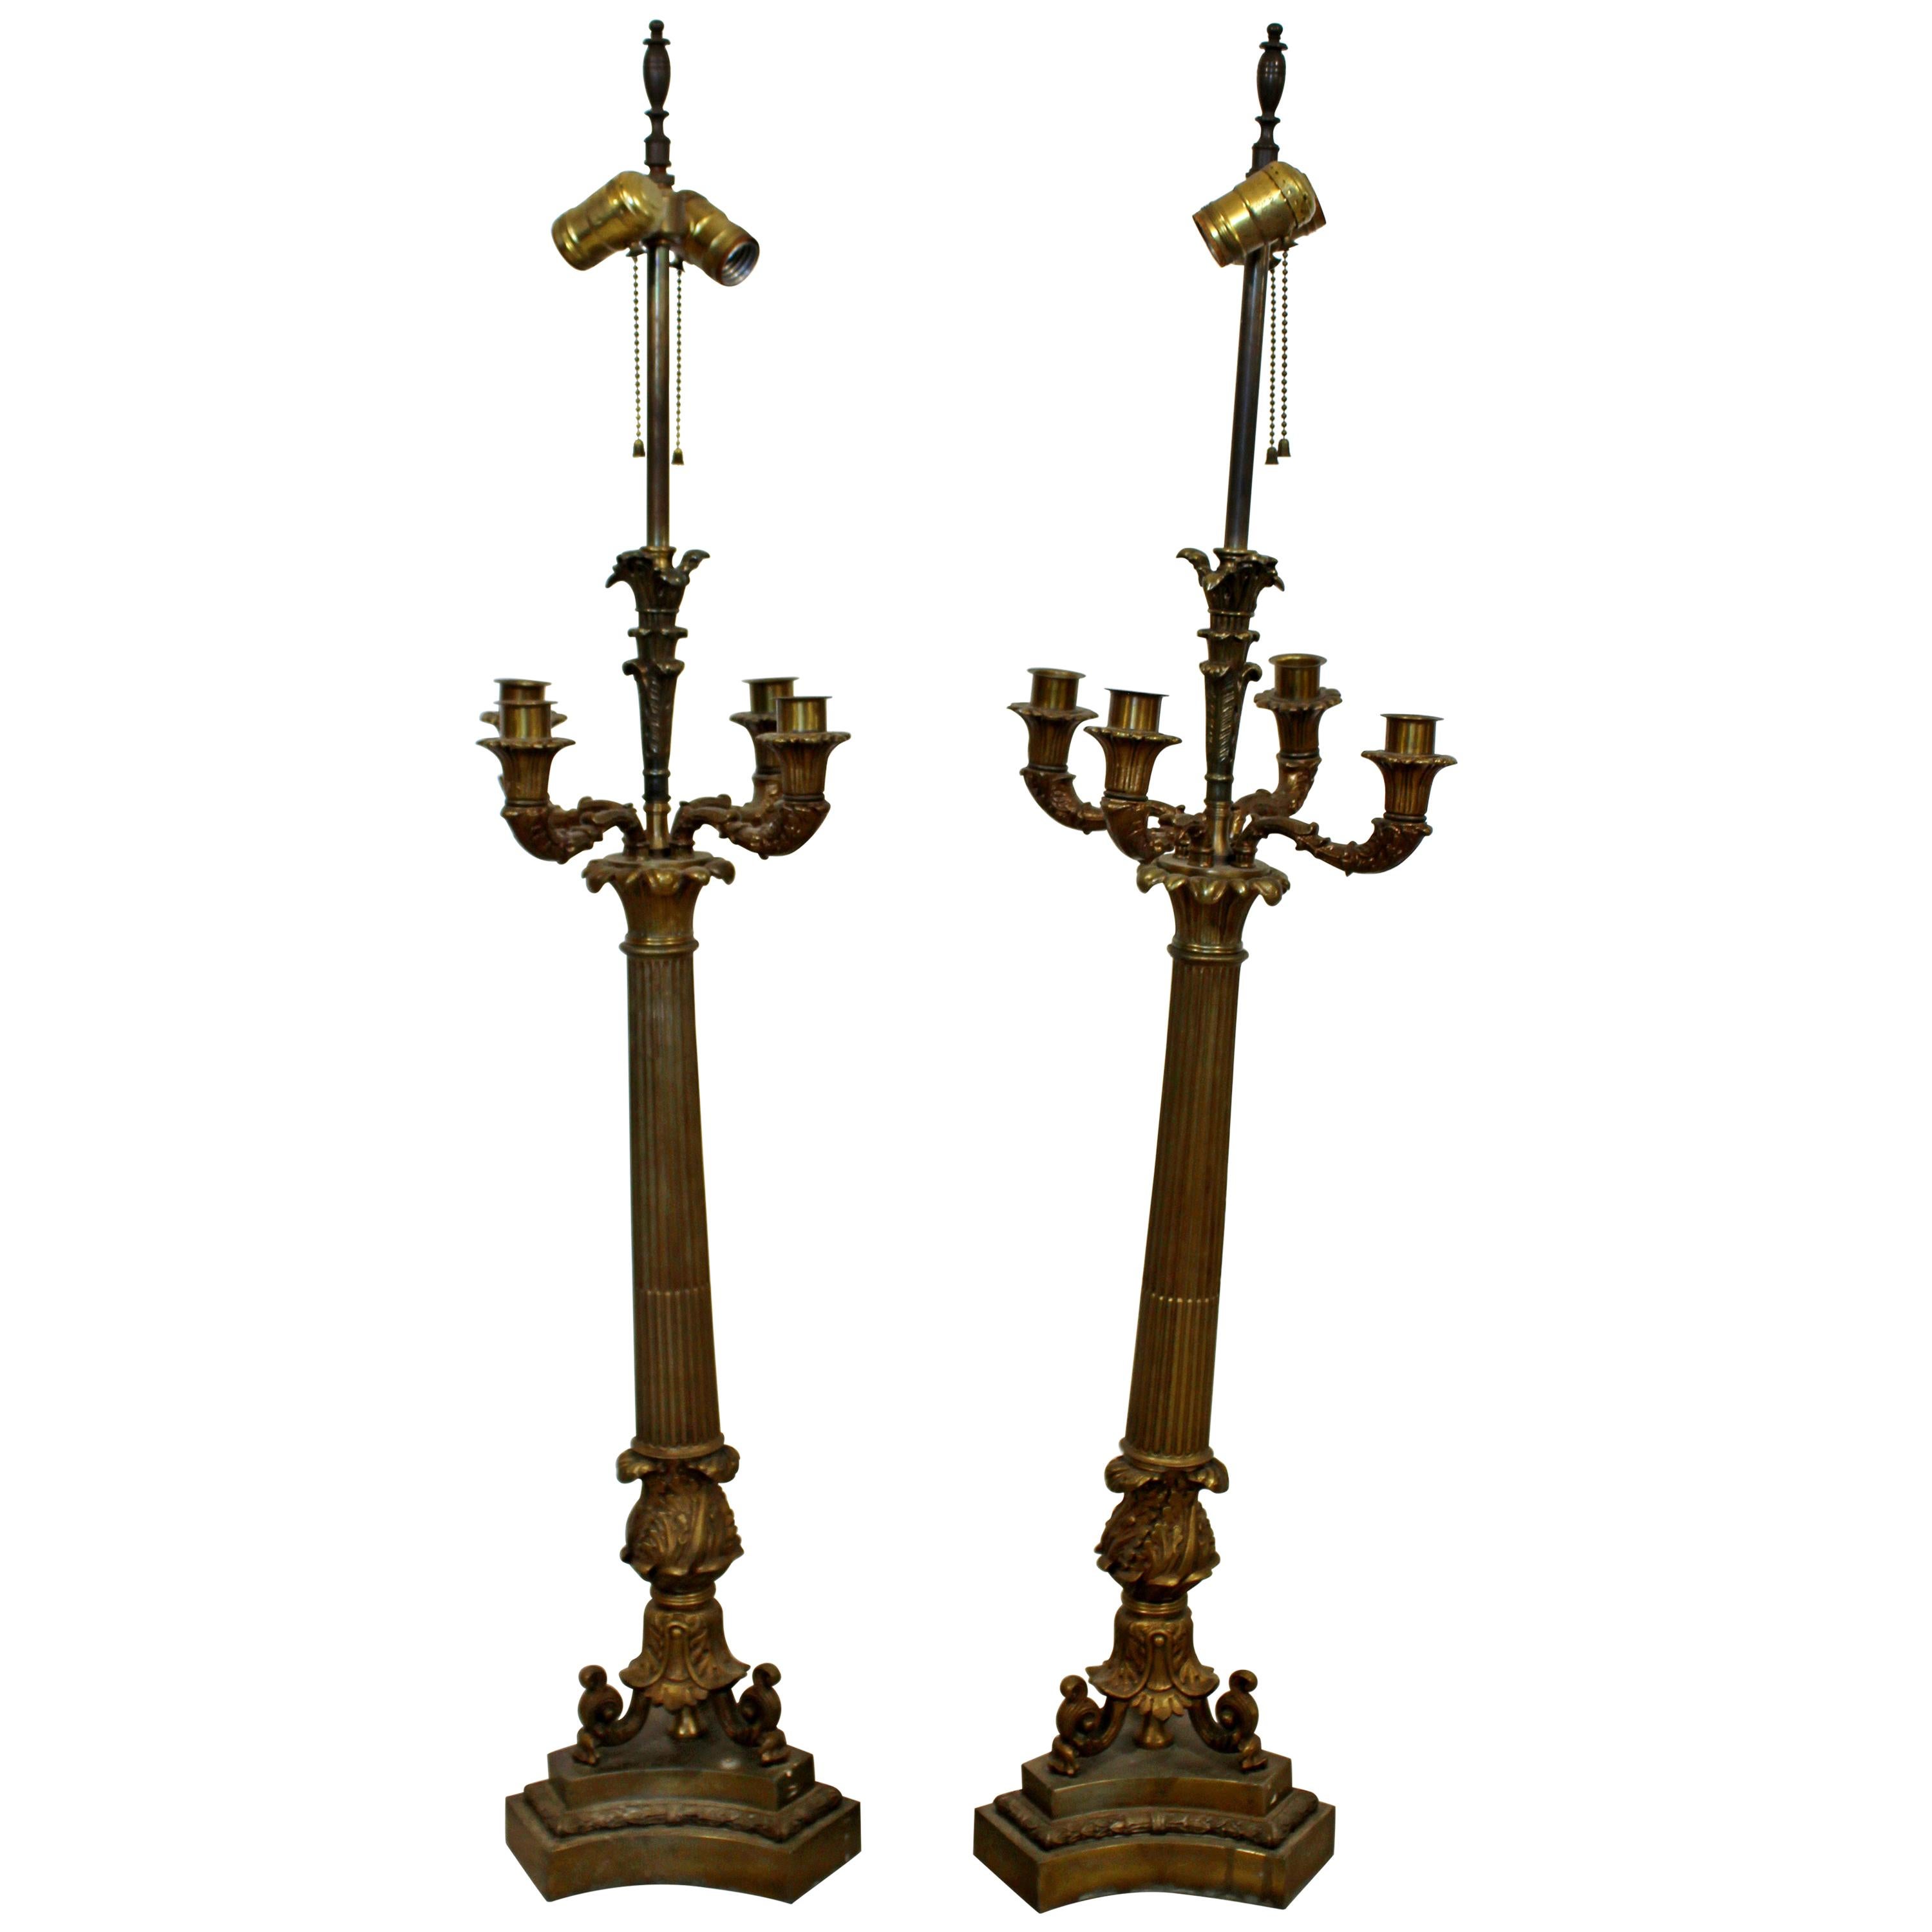 Art Deco Neoclassical Pair of William Kessler Bronze Table Lamps, 1930s